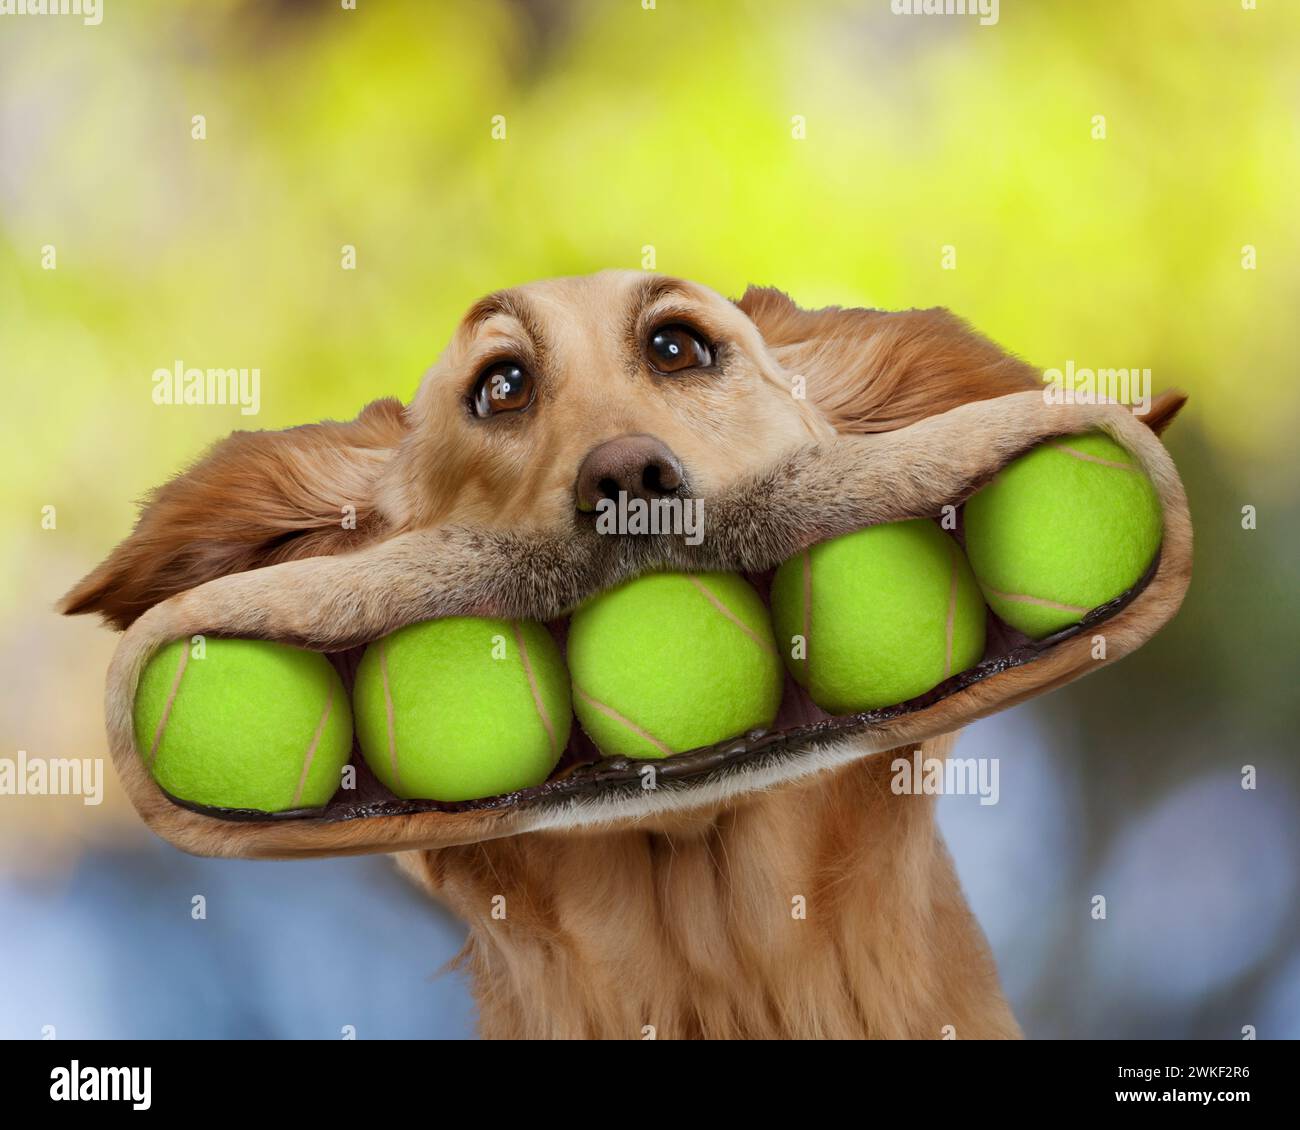 Ein lustiger Golden Retriever-Hund hat fünf Tennisbälle im Mund, in einem Bild von Überfluss, Enthusiasmus, Hundeverhalten und mehr. Stockfoto